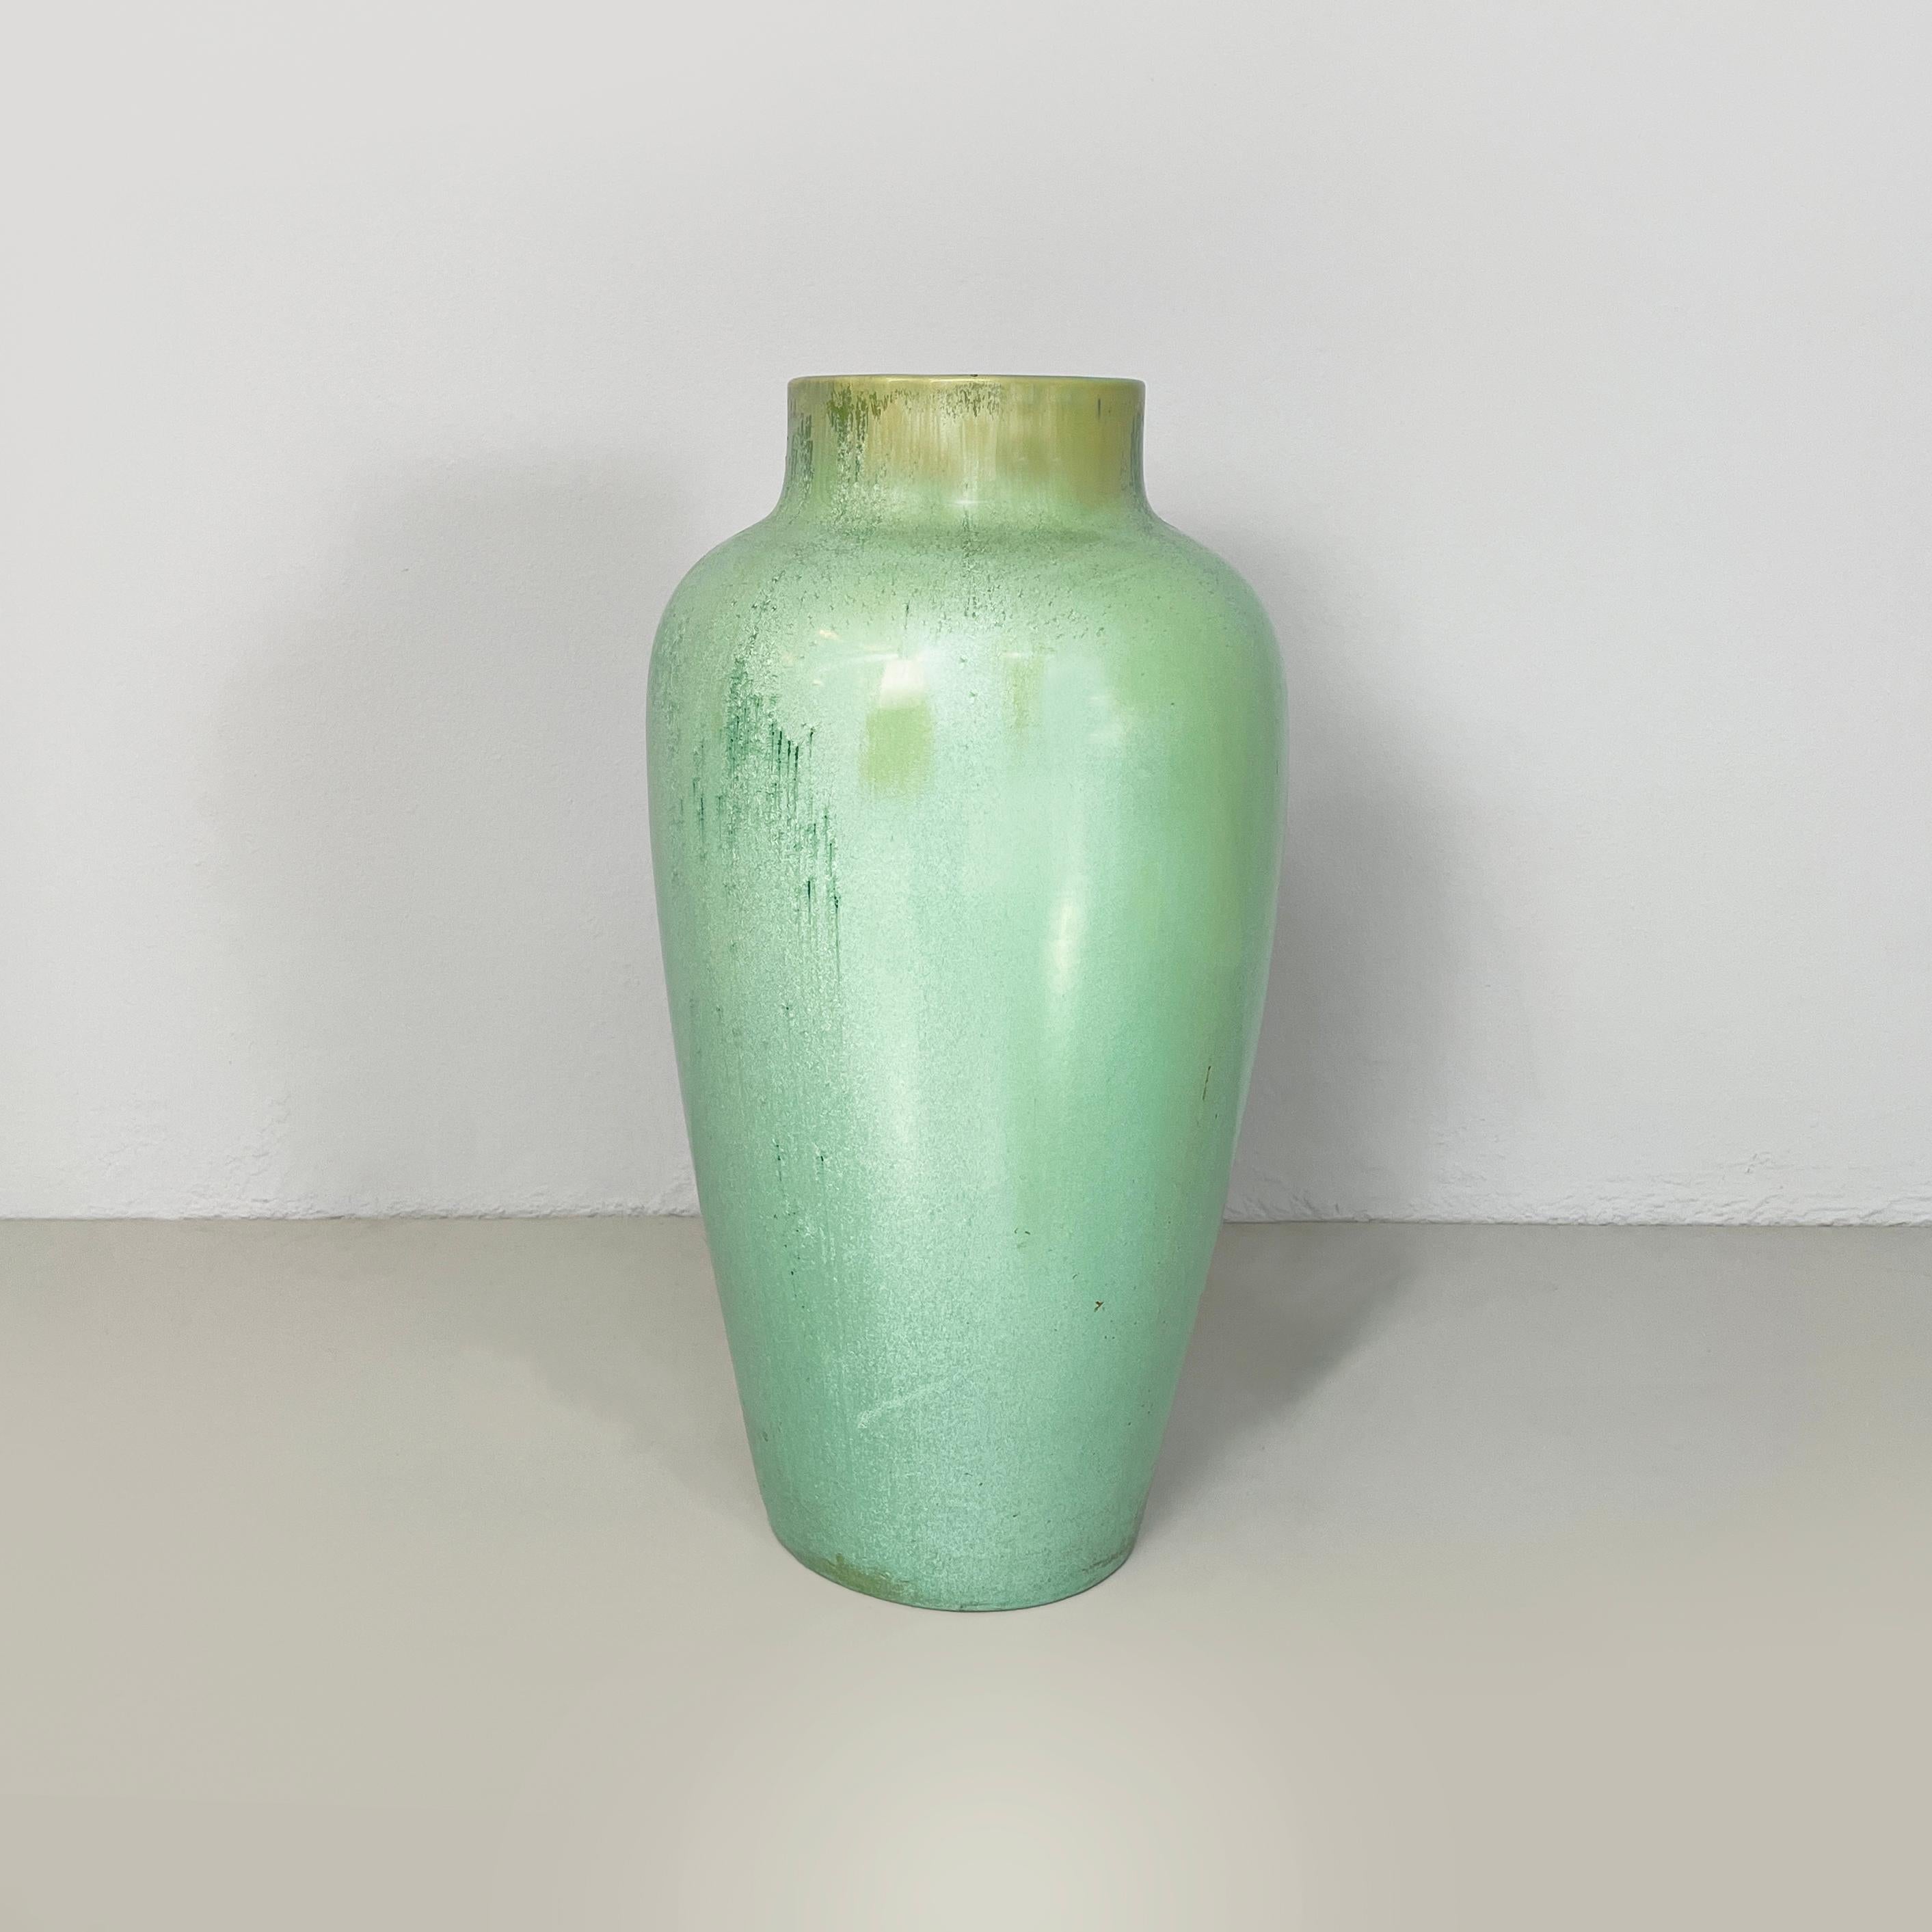 Italienische Vase aus glasierter Keramik aus der Mitte des Jahrhunderts von Guido Andlovitz, 1940er Jahre
Fantastische und Vintage Herbst Vase mit rundem Sockel in grün glasierter Keramik. Die Vase hat ein rundes Loch an der Oberseite. Die Struktur